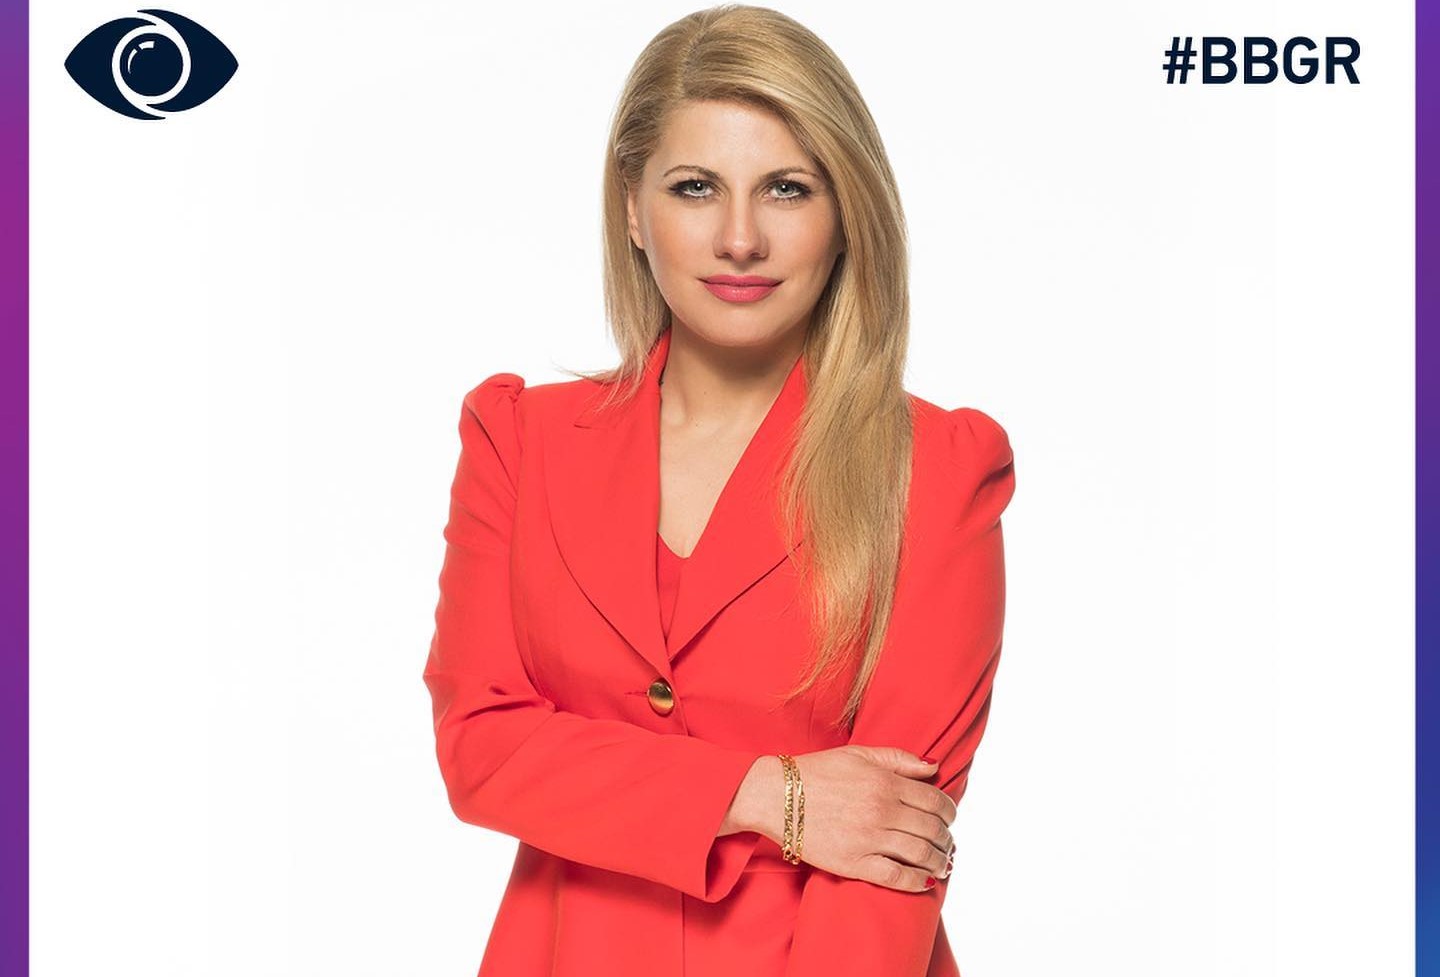 Άννα Μαρία Ψυχαράκη: Με επικό hashtag ανακοίνωσε την εμφάνισή της στην πρεμιέρα του Big Brother